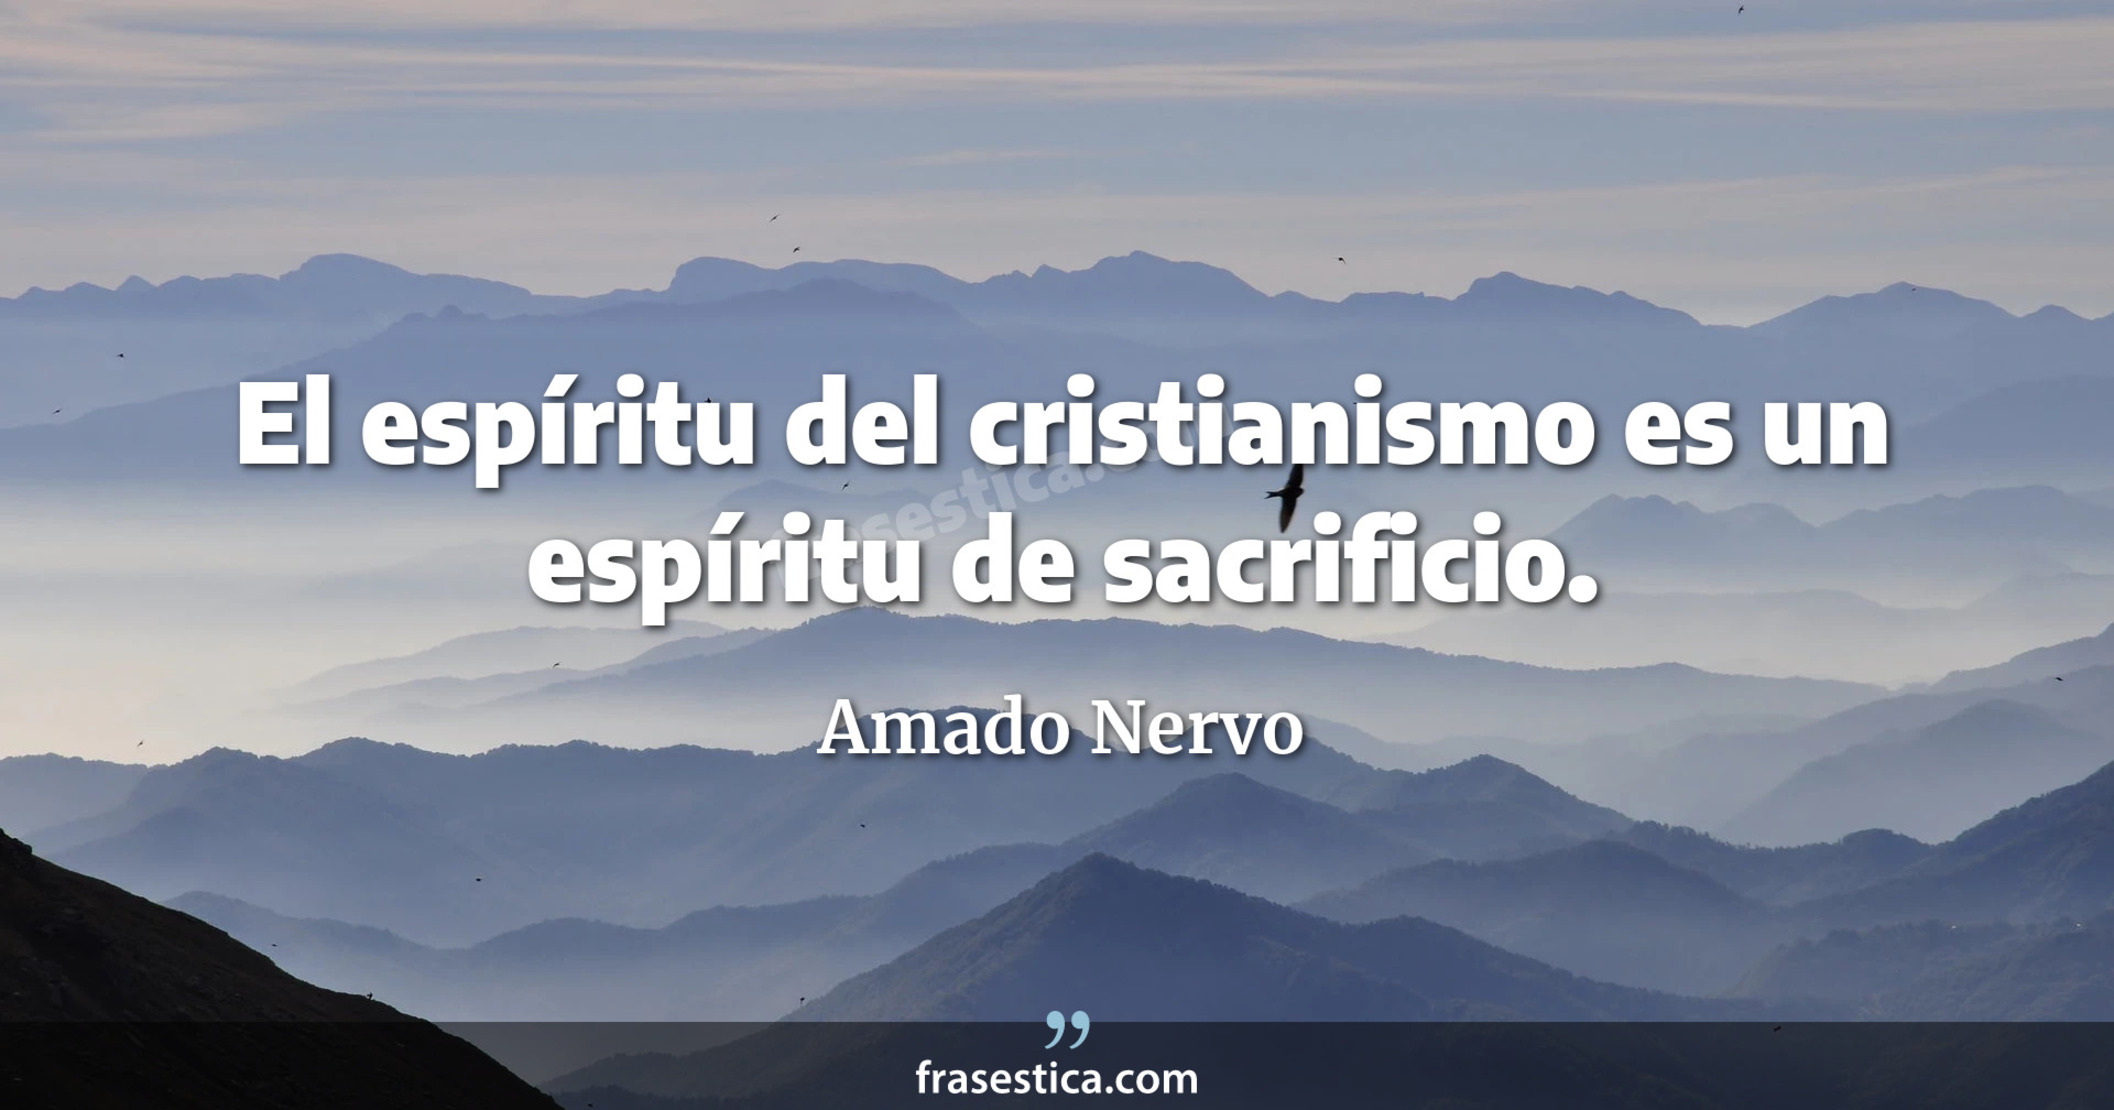 El espíritu del cristianismo es un espíritu de sacrificio. - Amado Nervo